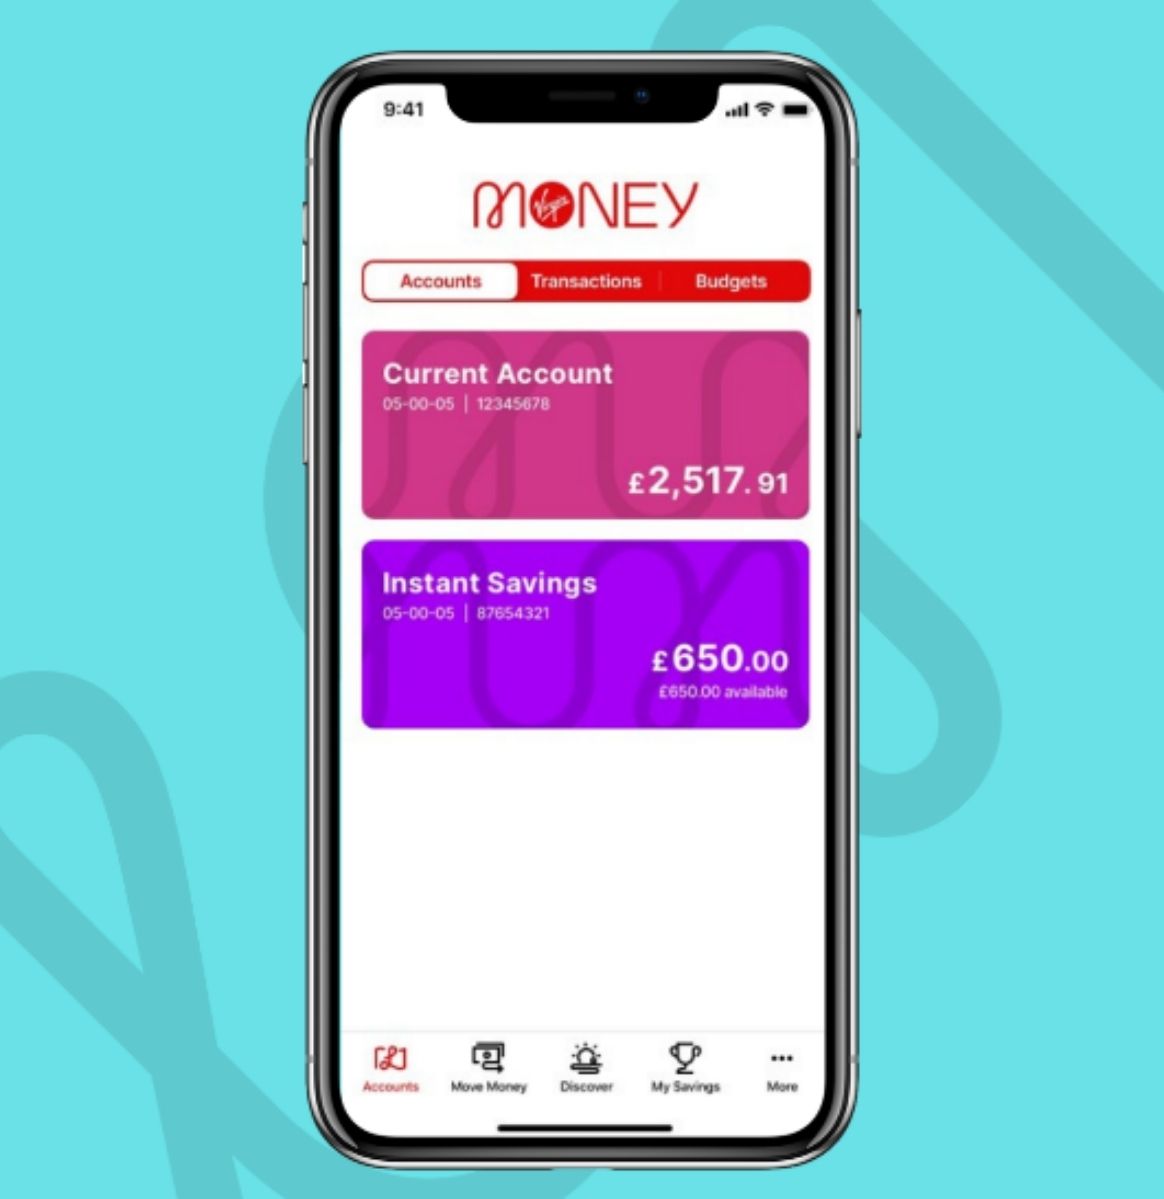 Virgin Money Mobile Banking app